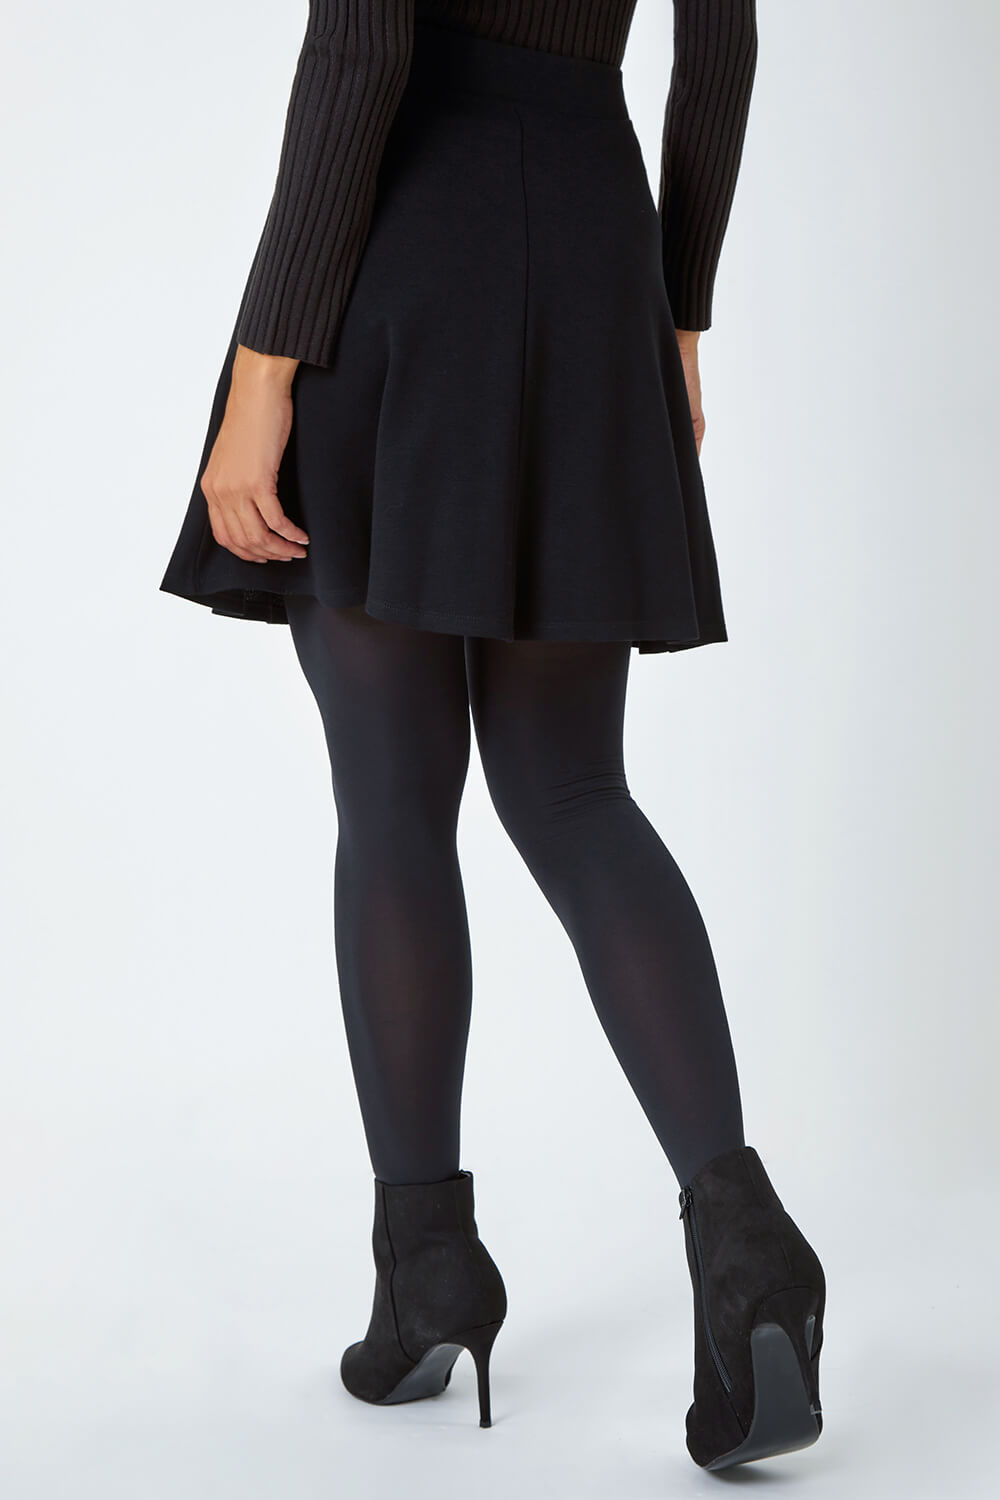 Black Stretch Skater Skirt, Image 3 of 5